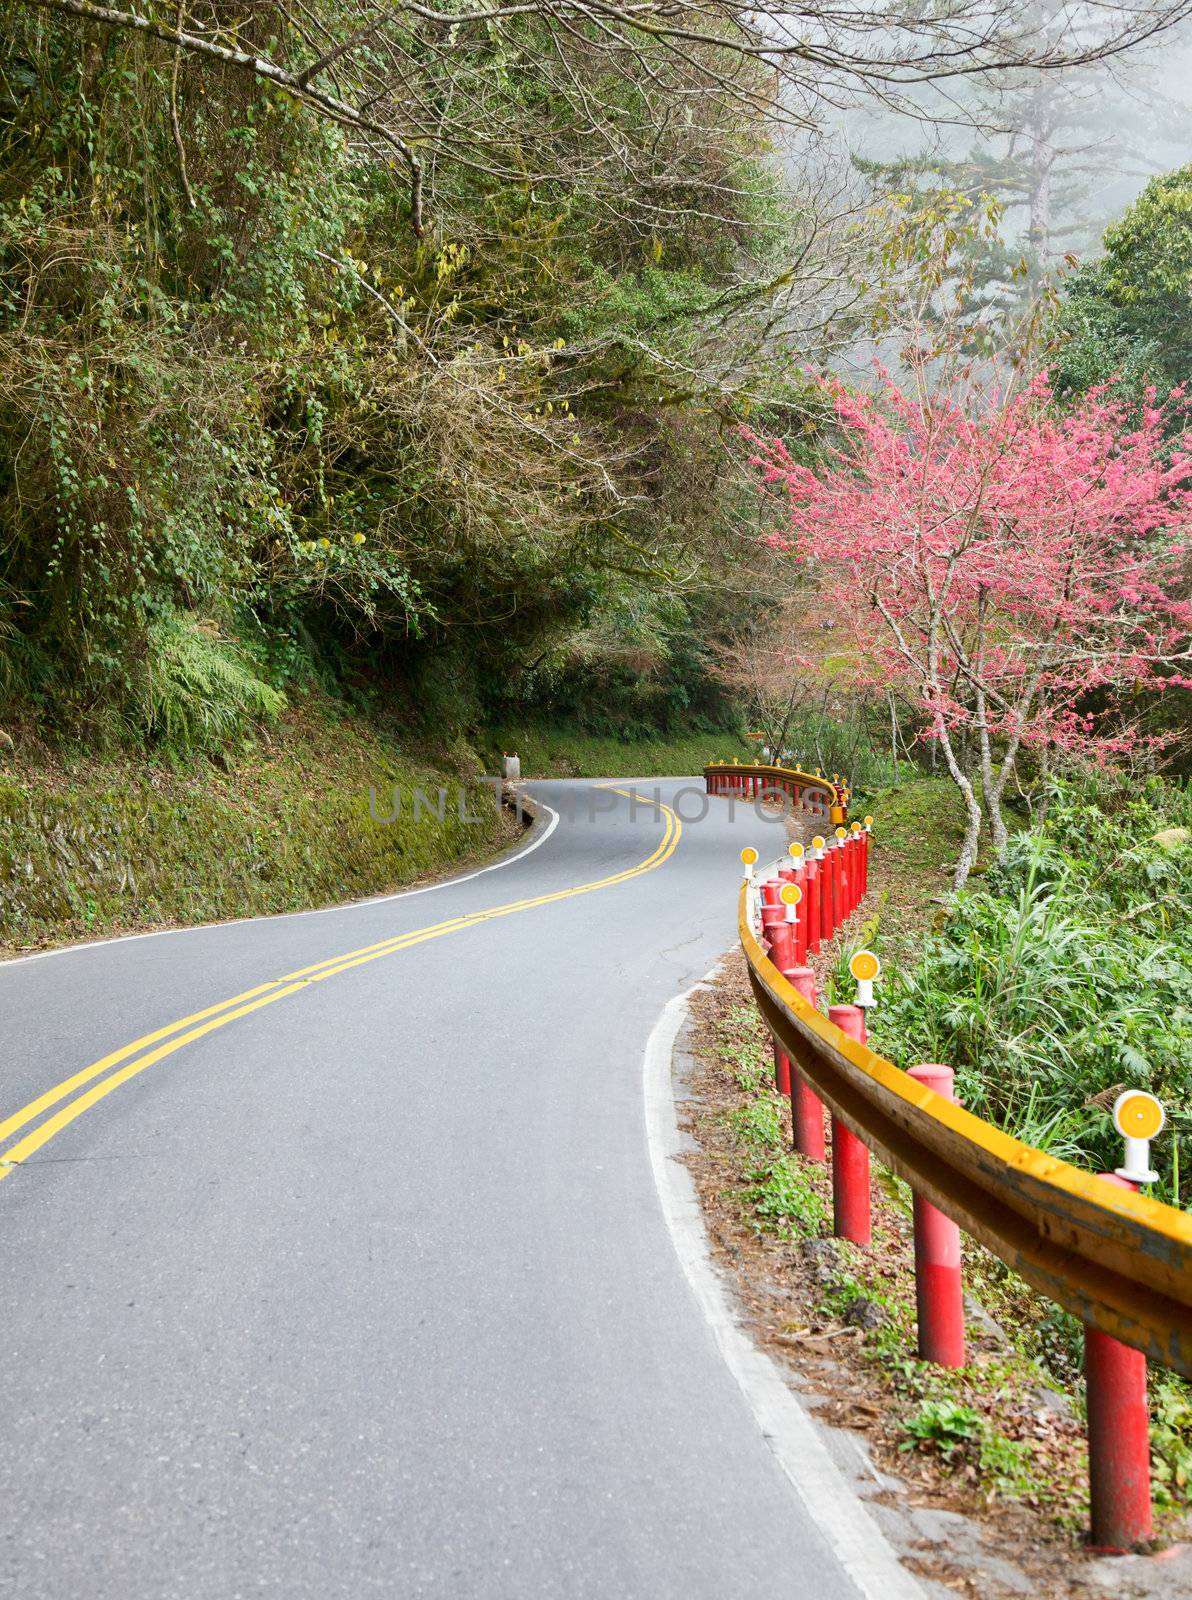 Scenic winding road in Taiwan